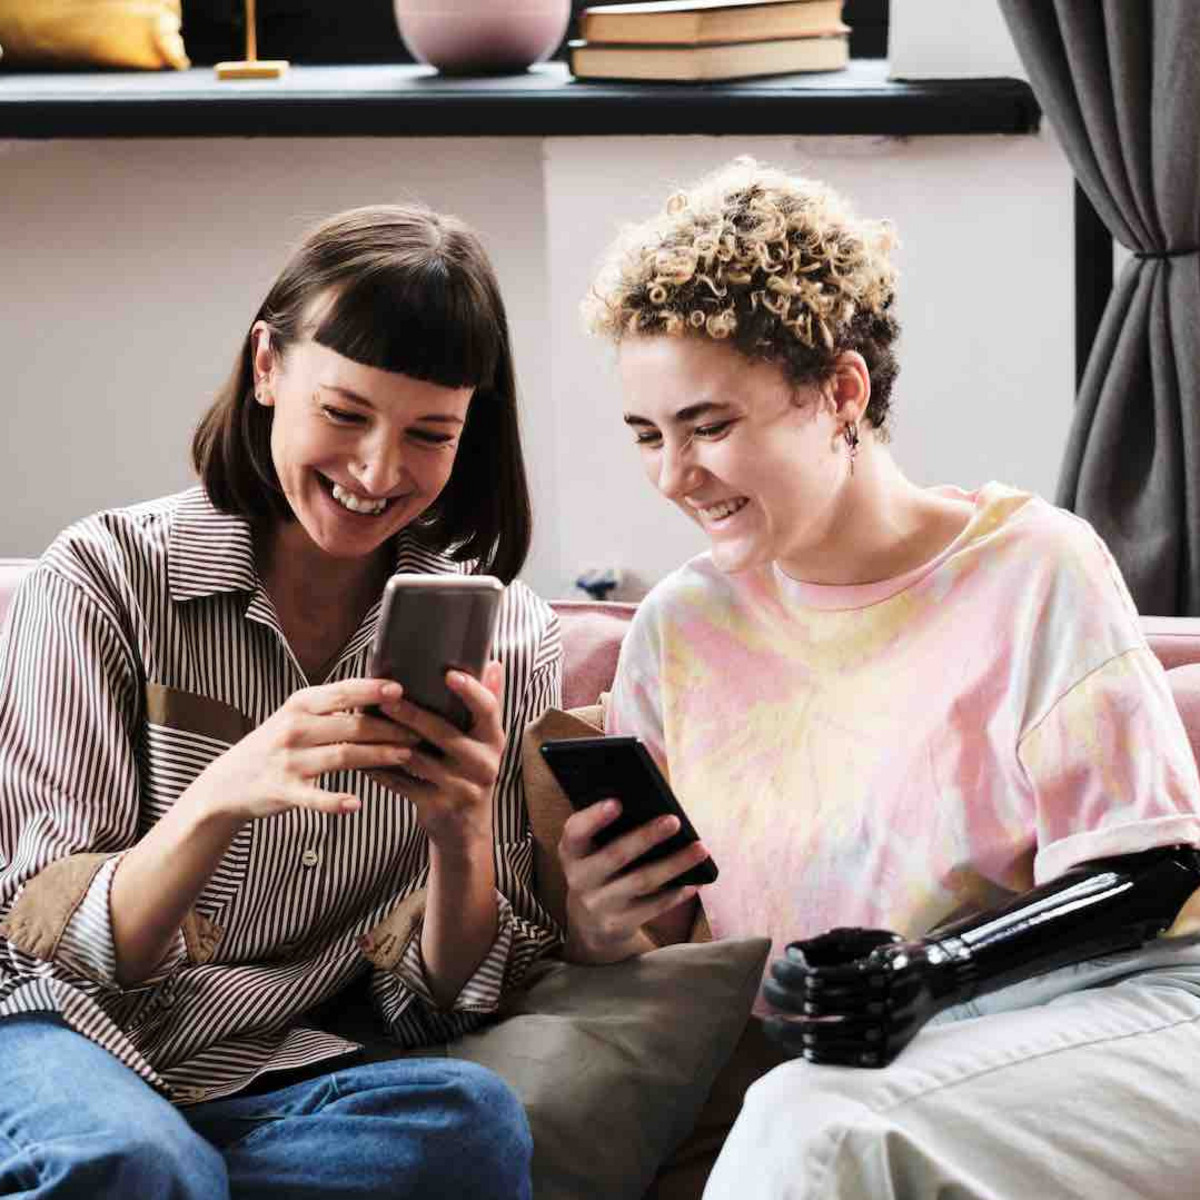 Zwei junge Frauen sitzen auf einem Sofa und schauen auf ihre Smartphones.